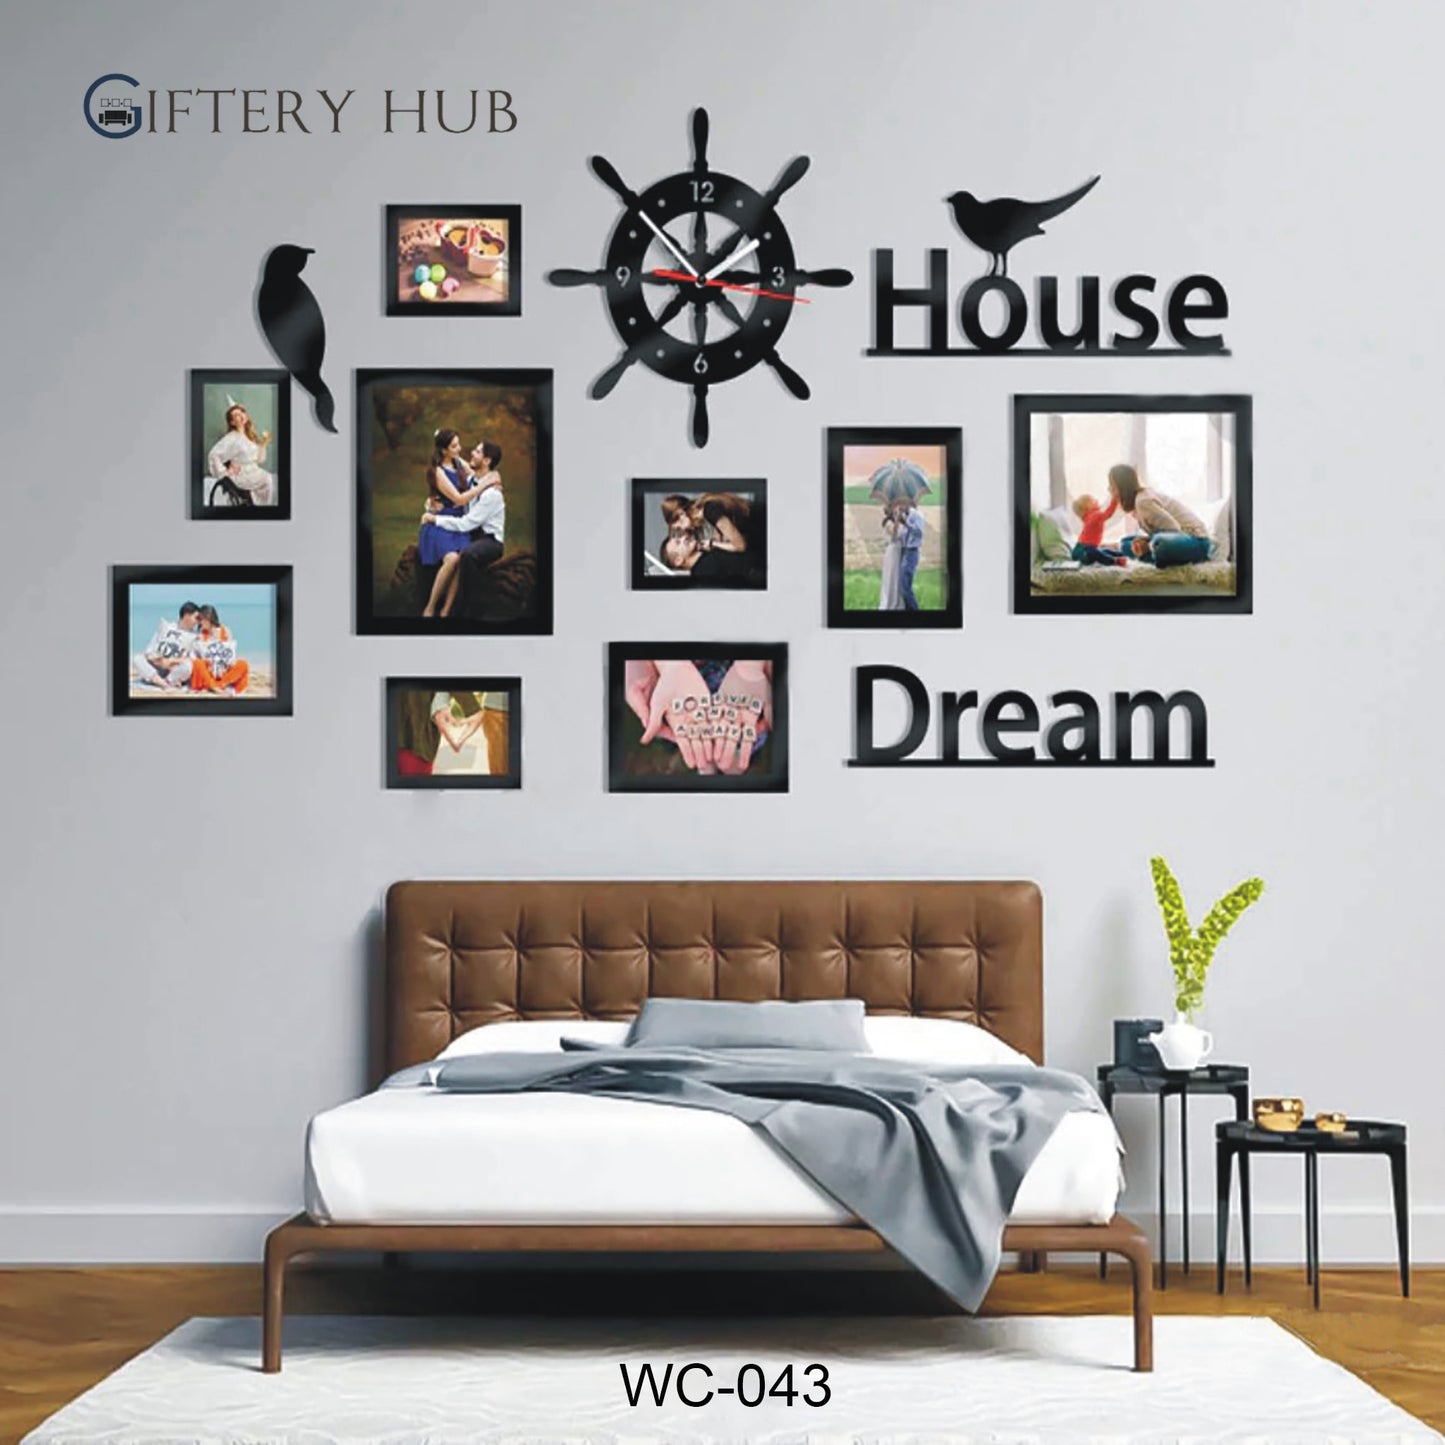 DREAM HOUSE PHOTO FRAMES CLOCK-DIY FOR HOME - WC-043